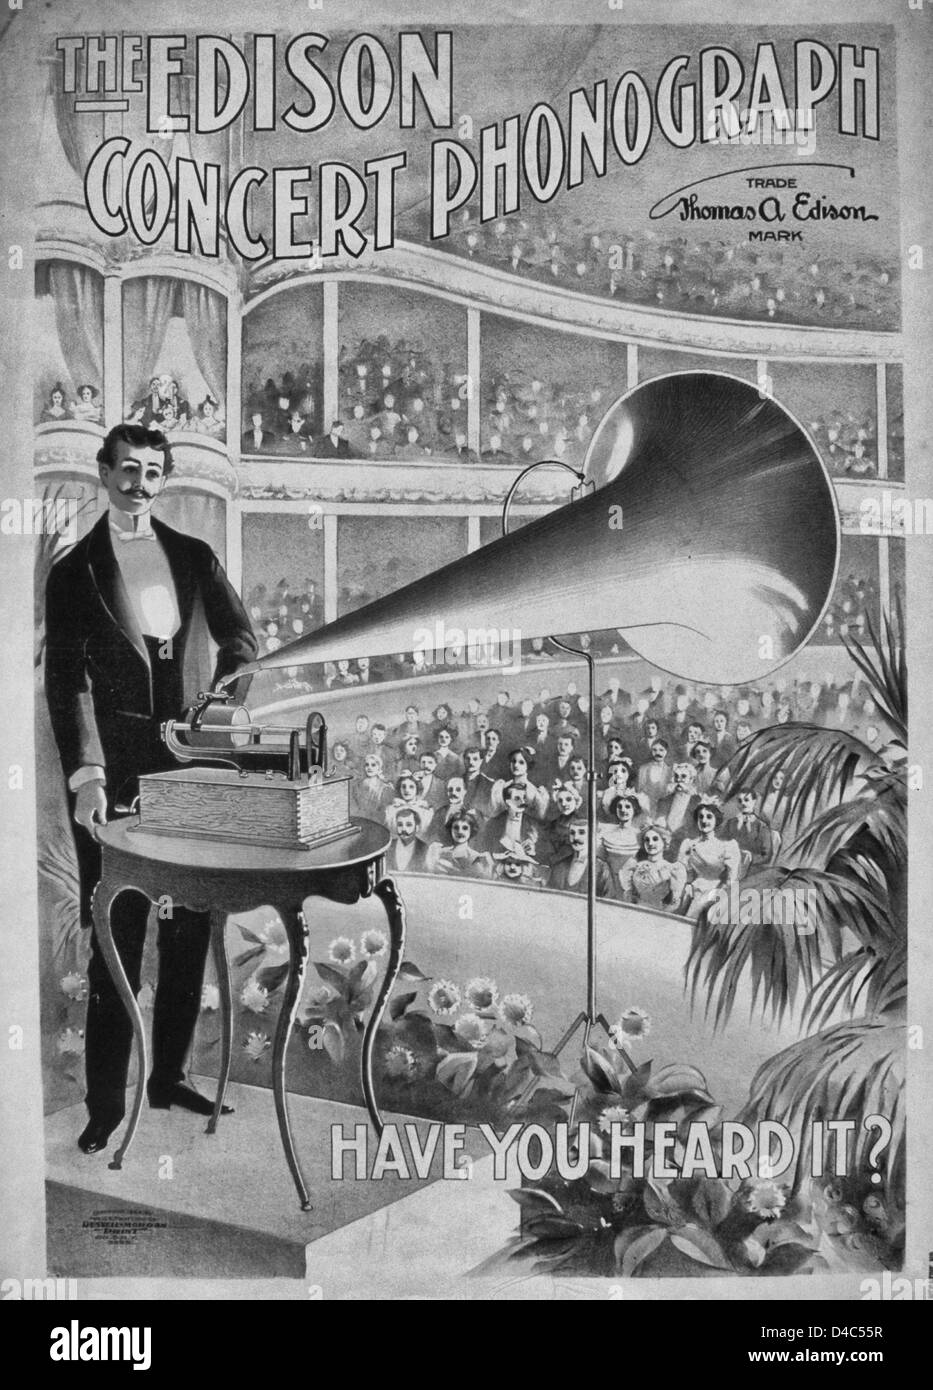 Der Phonograph Edison Konzert haben Sie Itt gehört? Werbung Plakat für Edison Phonographen zeigt einen Mann spielt einen Phonographen auf einer Bühne vor großem Publikum sitzt in einem großen Konzertsaal, ca. 1899 Stockfoto